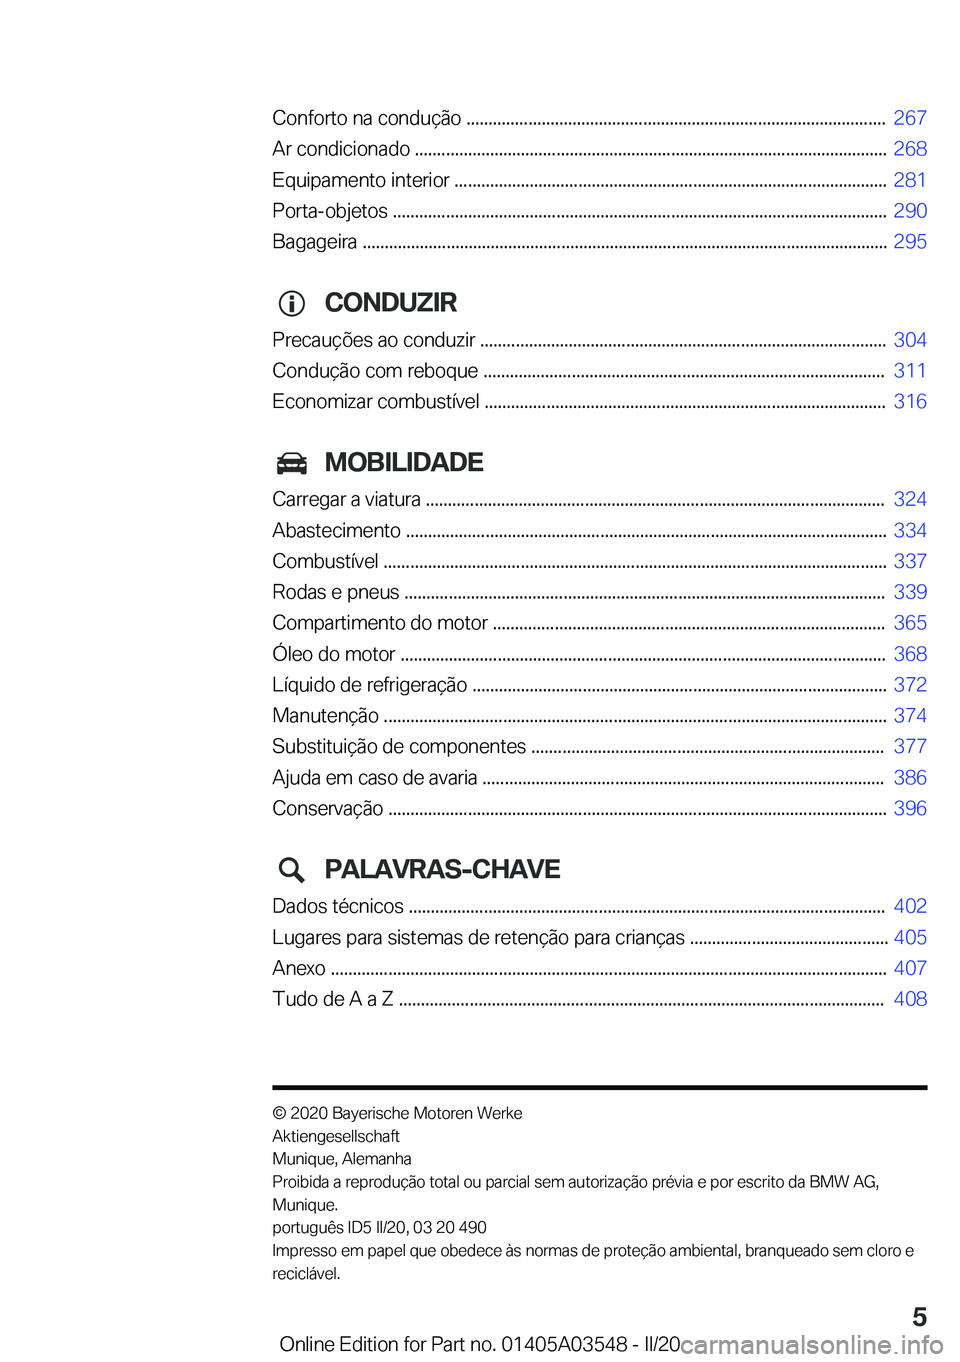 BMW X3 PLUG IN HYBRID 2020  Manual do condutor (in Portuguese) �C�o�n�f�o�r�t�o��n�a��c�o�n�d�u�